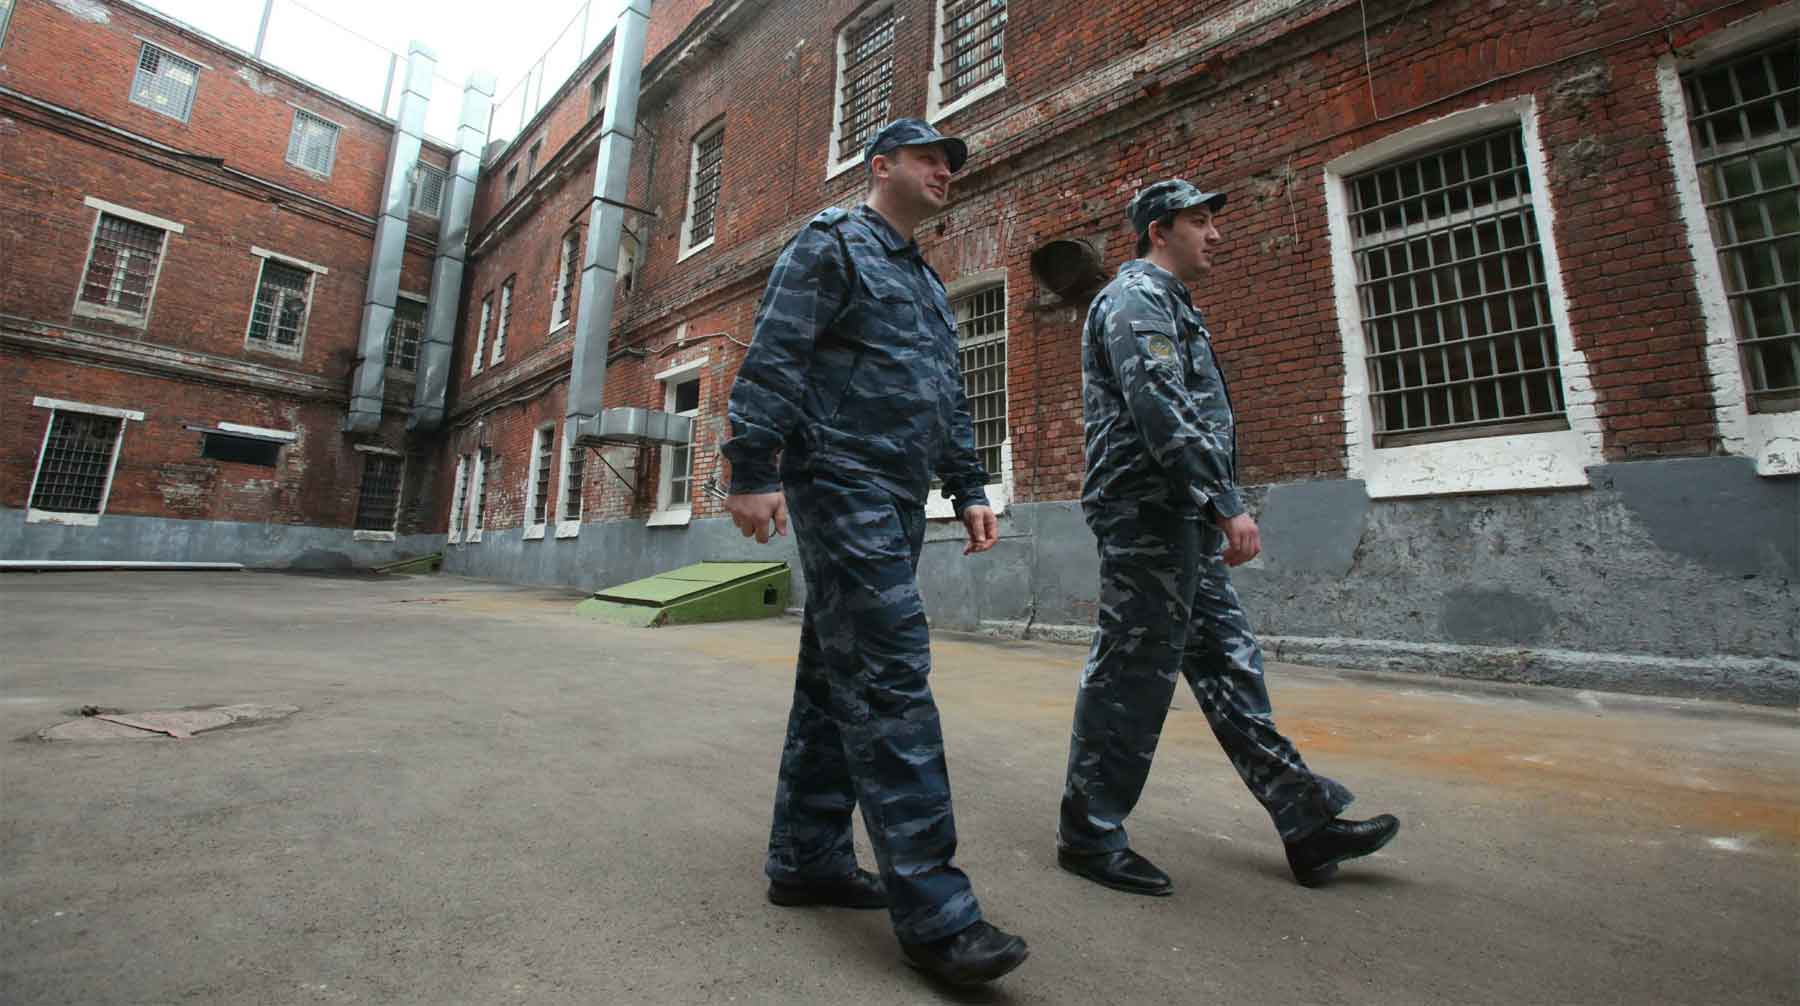 Полковник спецслужбы дал показания, которые привели к задержанию его высокопоставленных коллег Фото: © Pravda Komsomolskaya